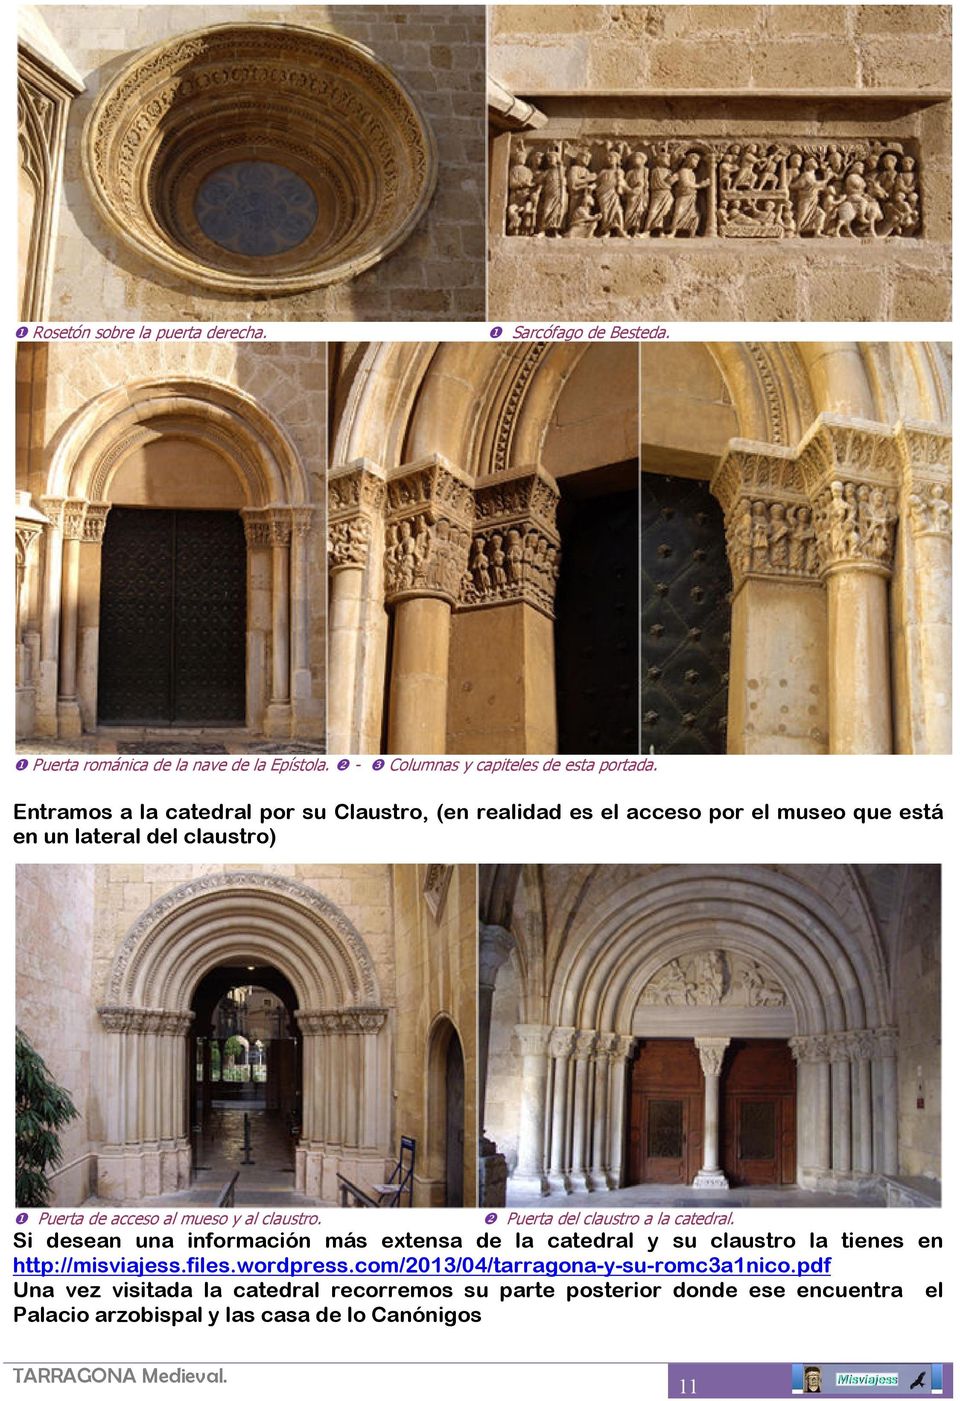 ❷ Puerta del claustro a la catedral. Si desean una información más extensa de la catedral y su claustro la tienes en http://misviajess.files.wordpress.